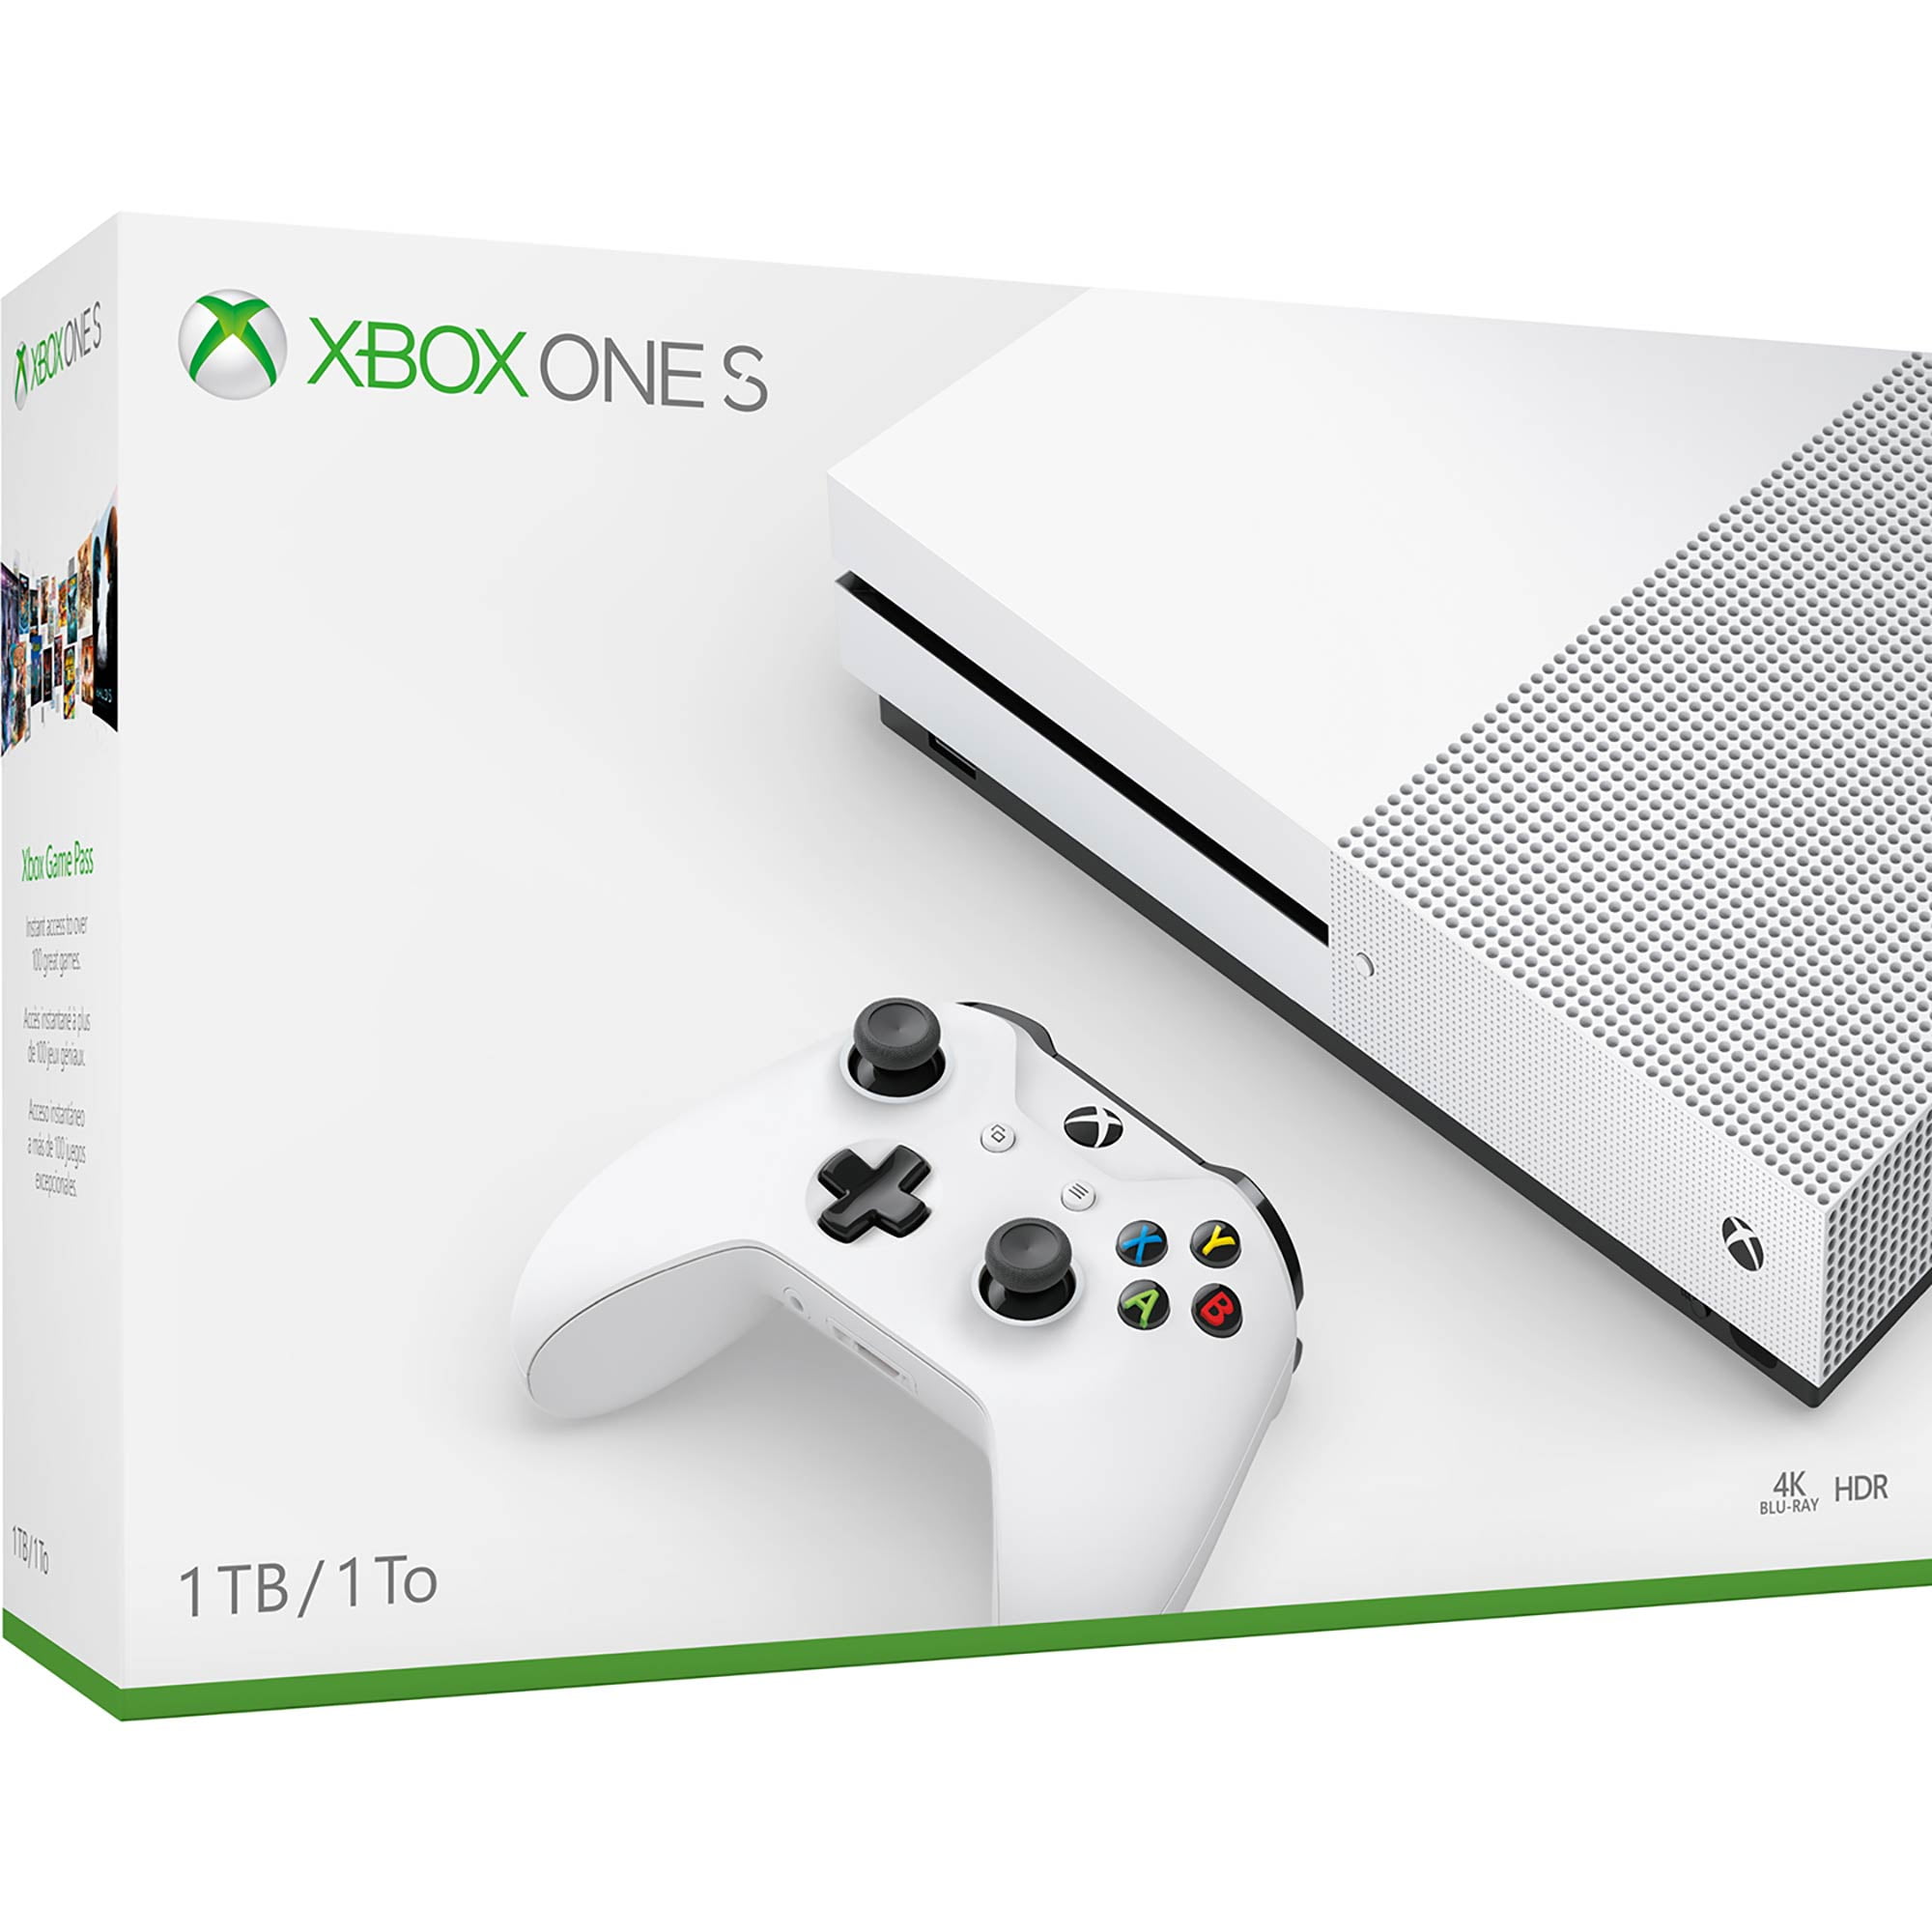 Microsoft Xbox One S 1TB Console, White, 234-01249 - Walmart.com